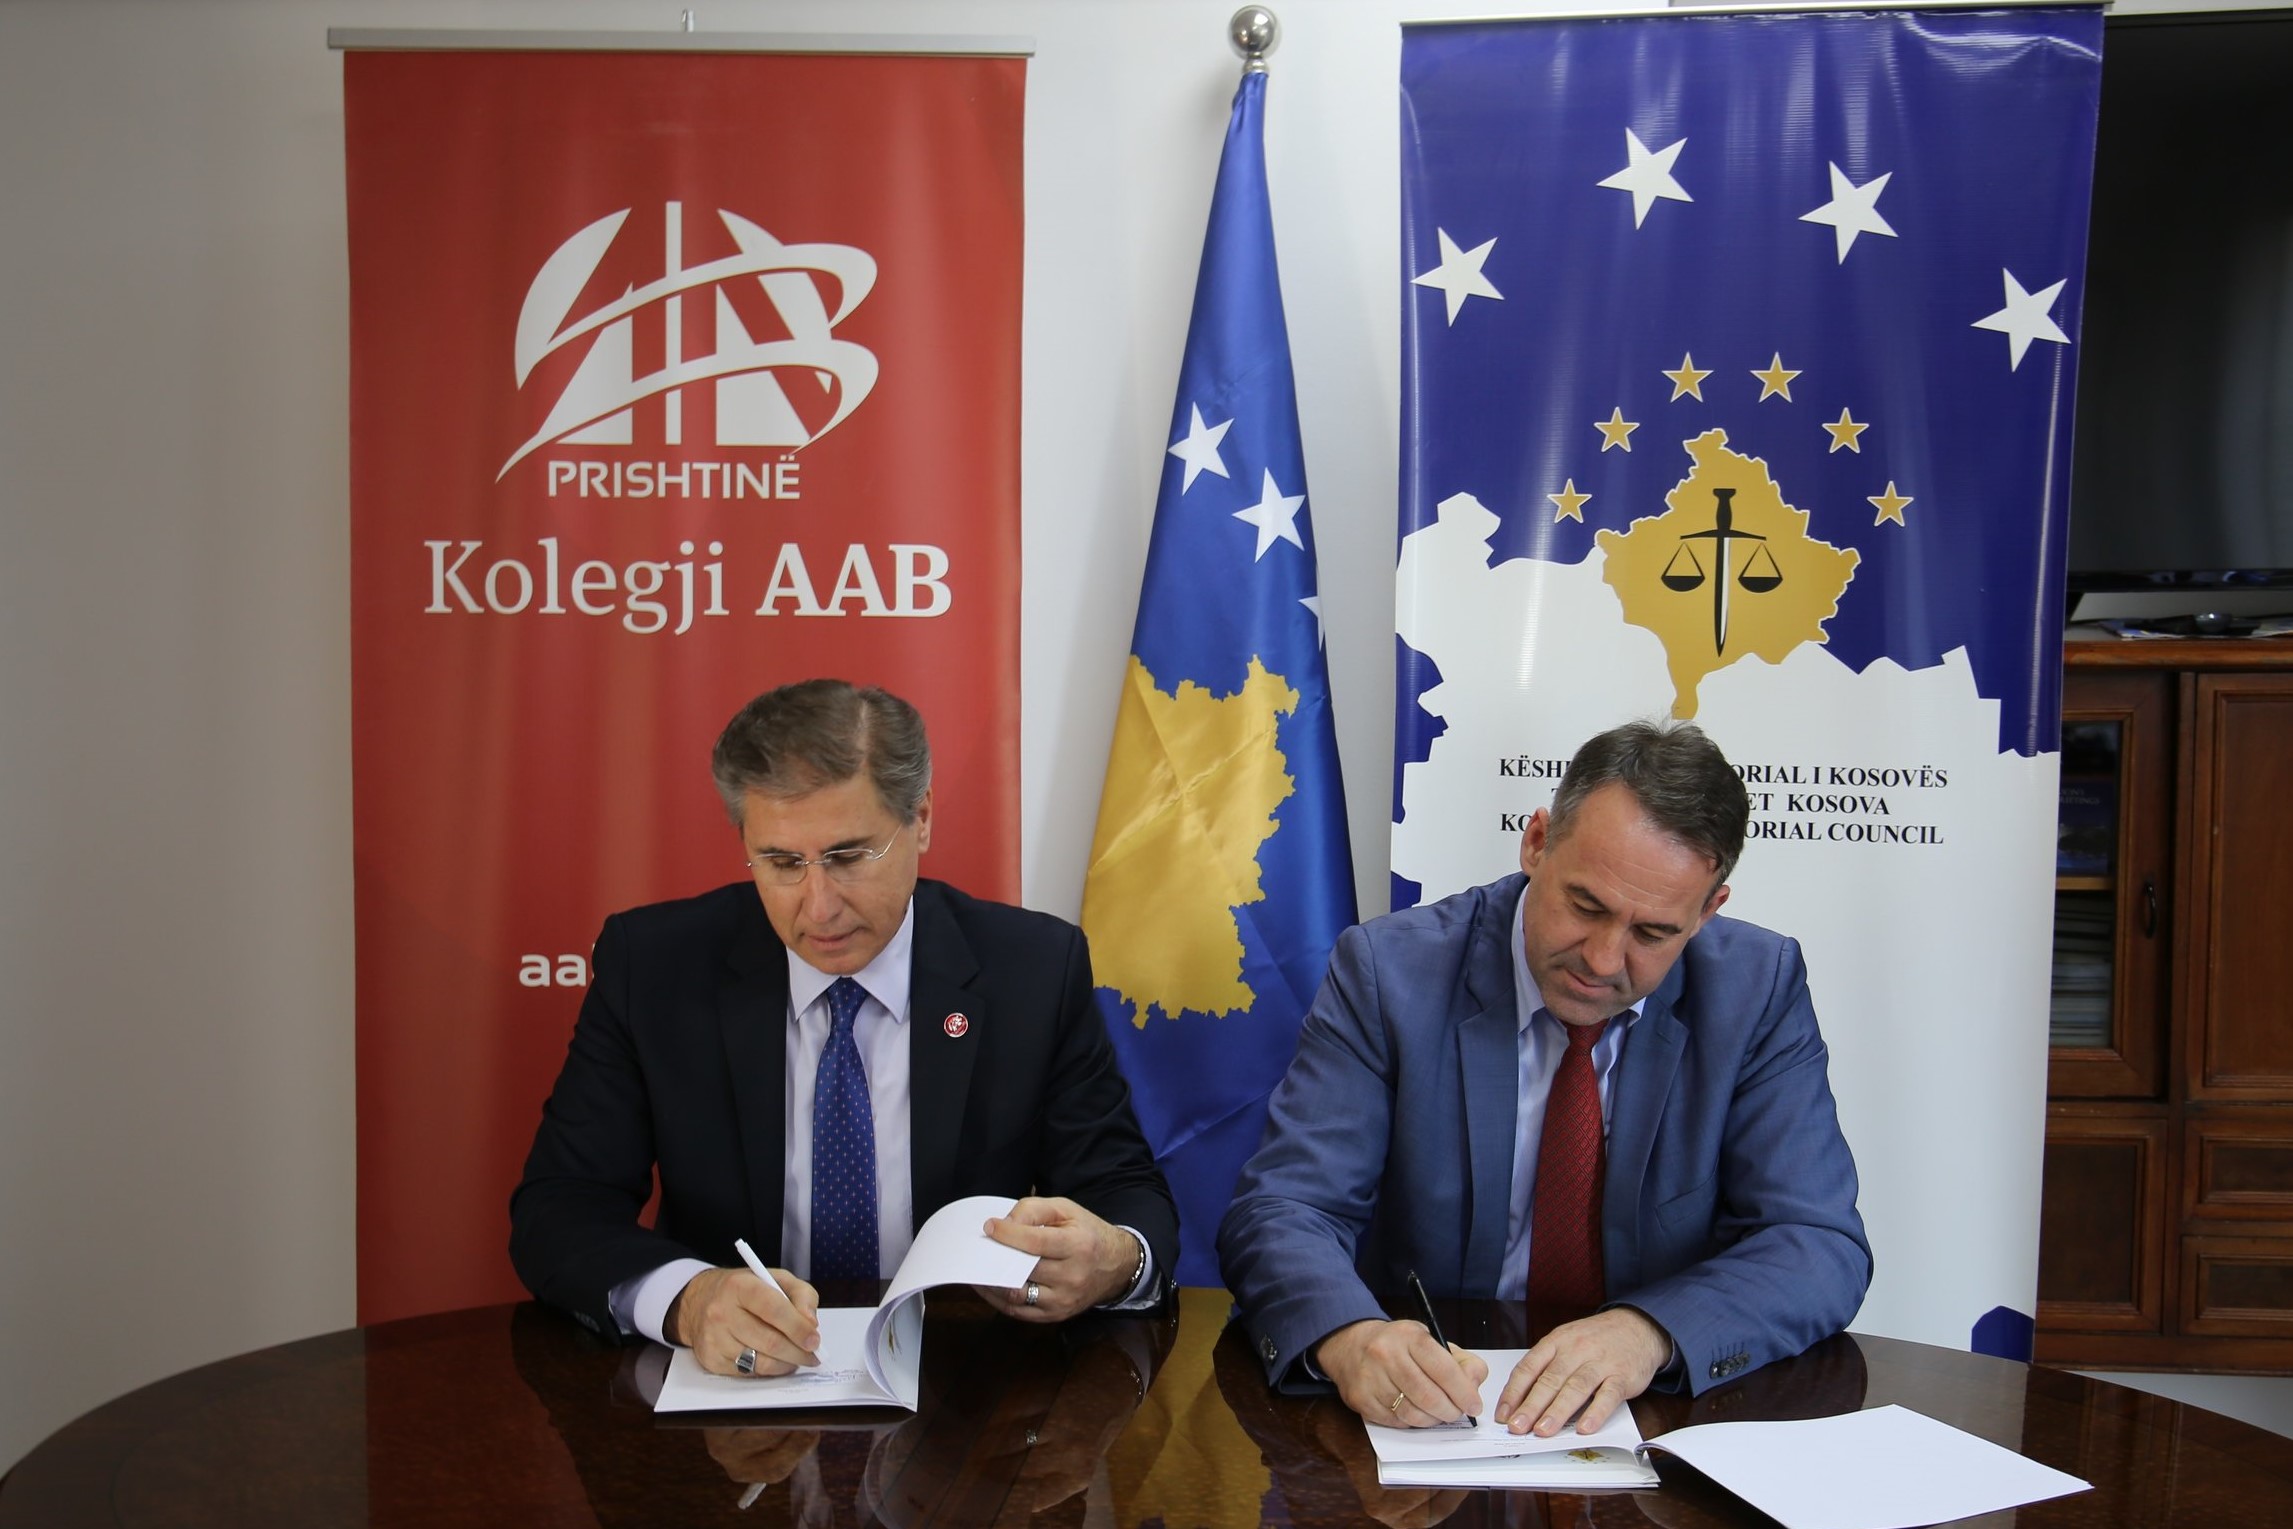 KPK-ja dhe Fakulteti Juridik i Kolegjit “AAB” nënshkruajnë memorandum bashkëpunimi